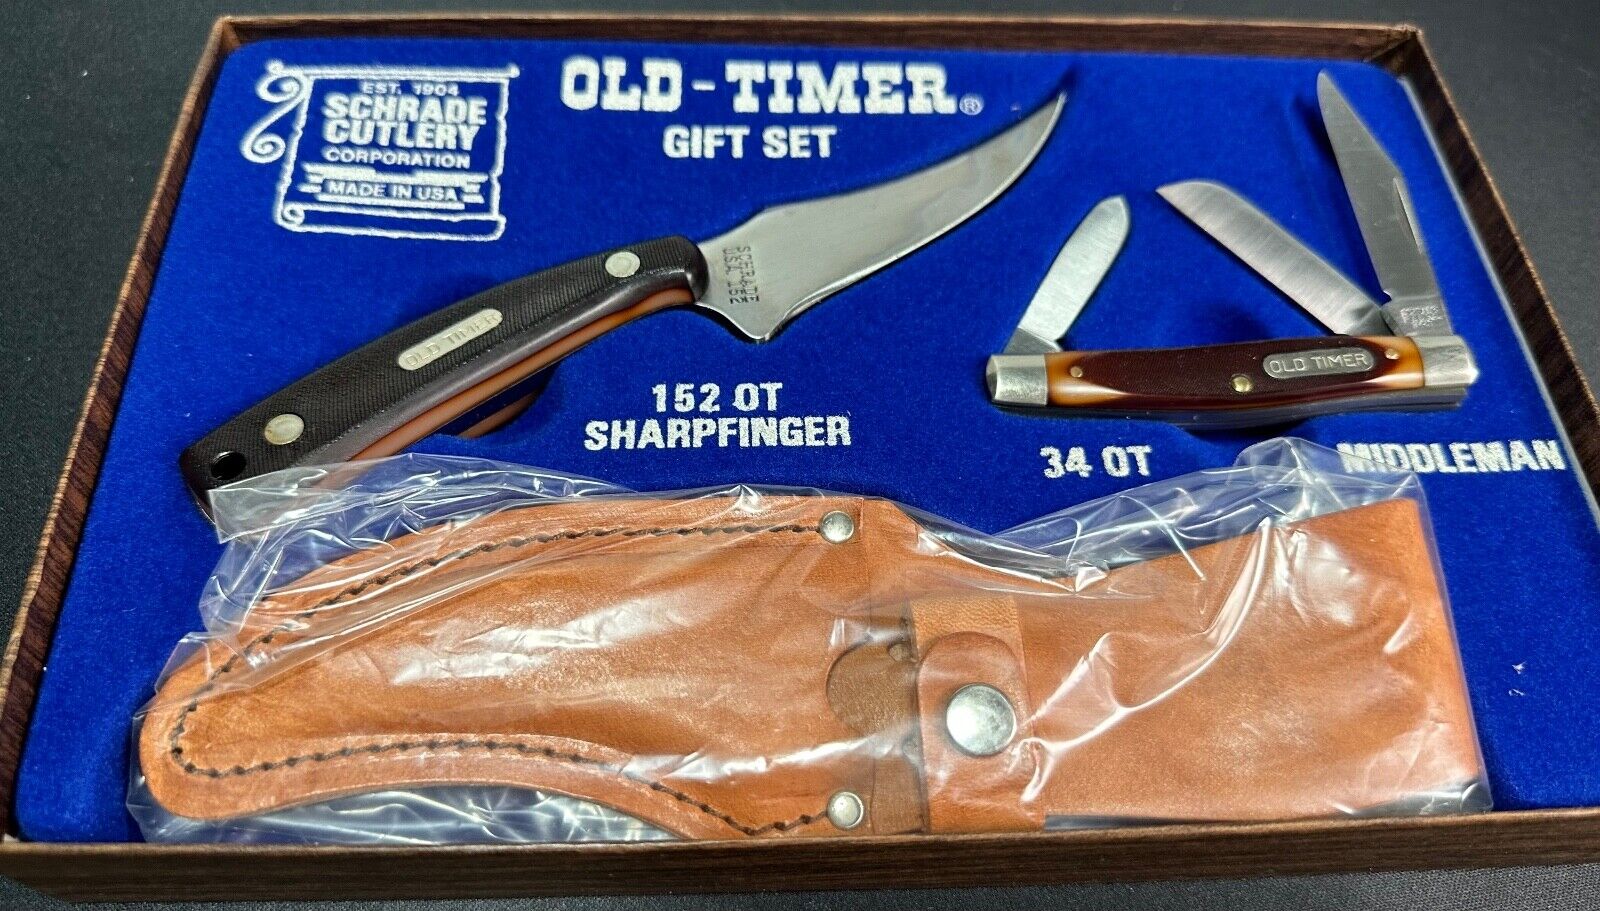 Schrade USA Old Timer Gift Set 152OT Sharpfinger with Sheath & 34OT NIB